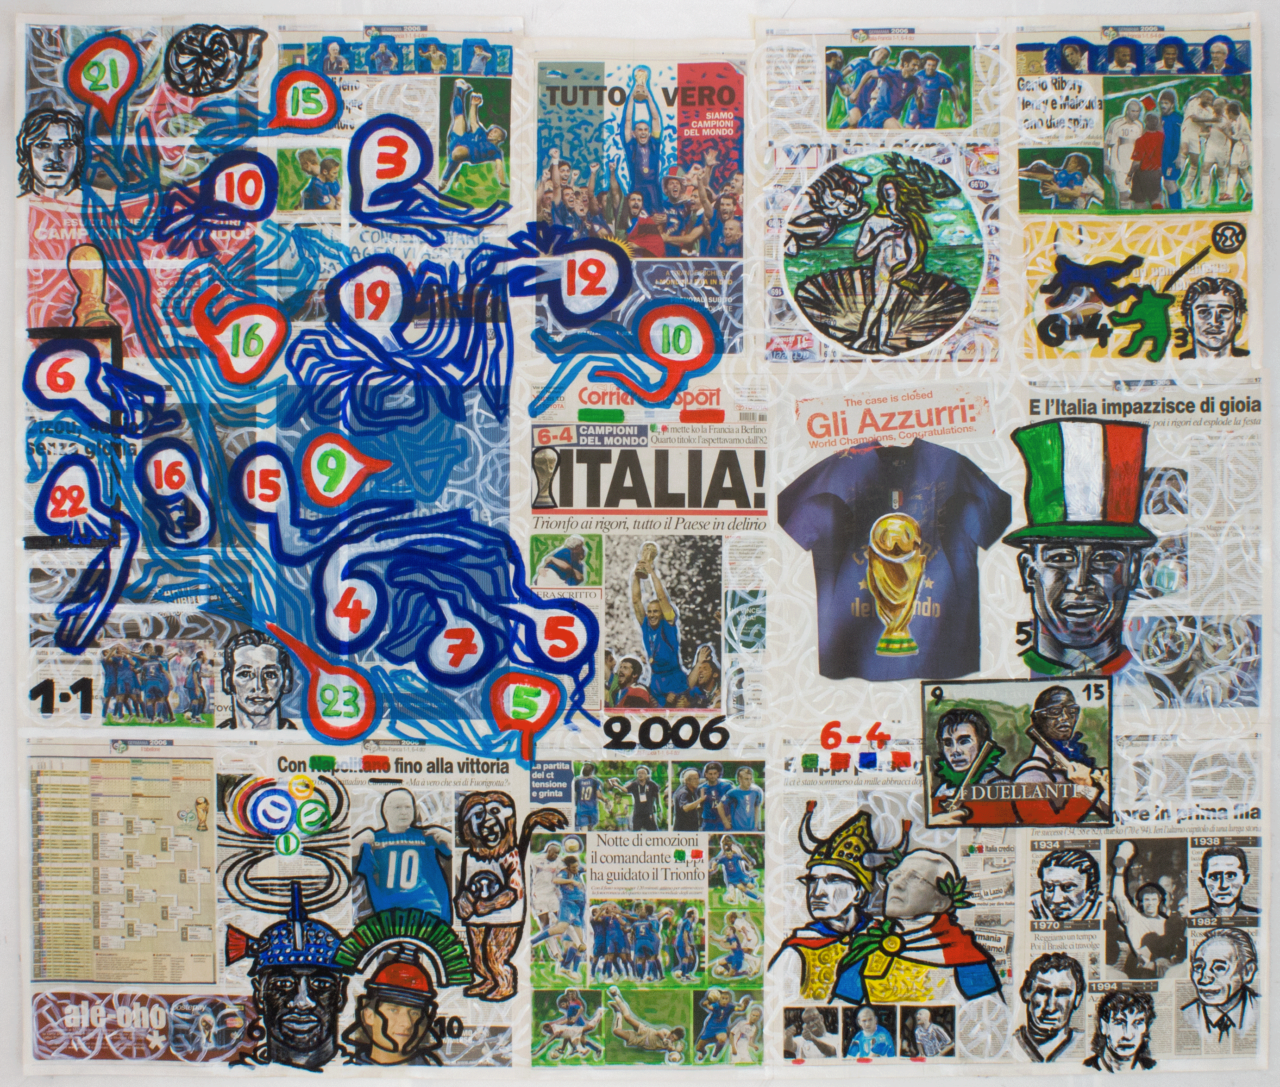 6-4 Campioni del Mondo! (2006), 158 x 187 cm, acrylic on newspaper, inv. PH581E